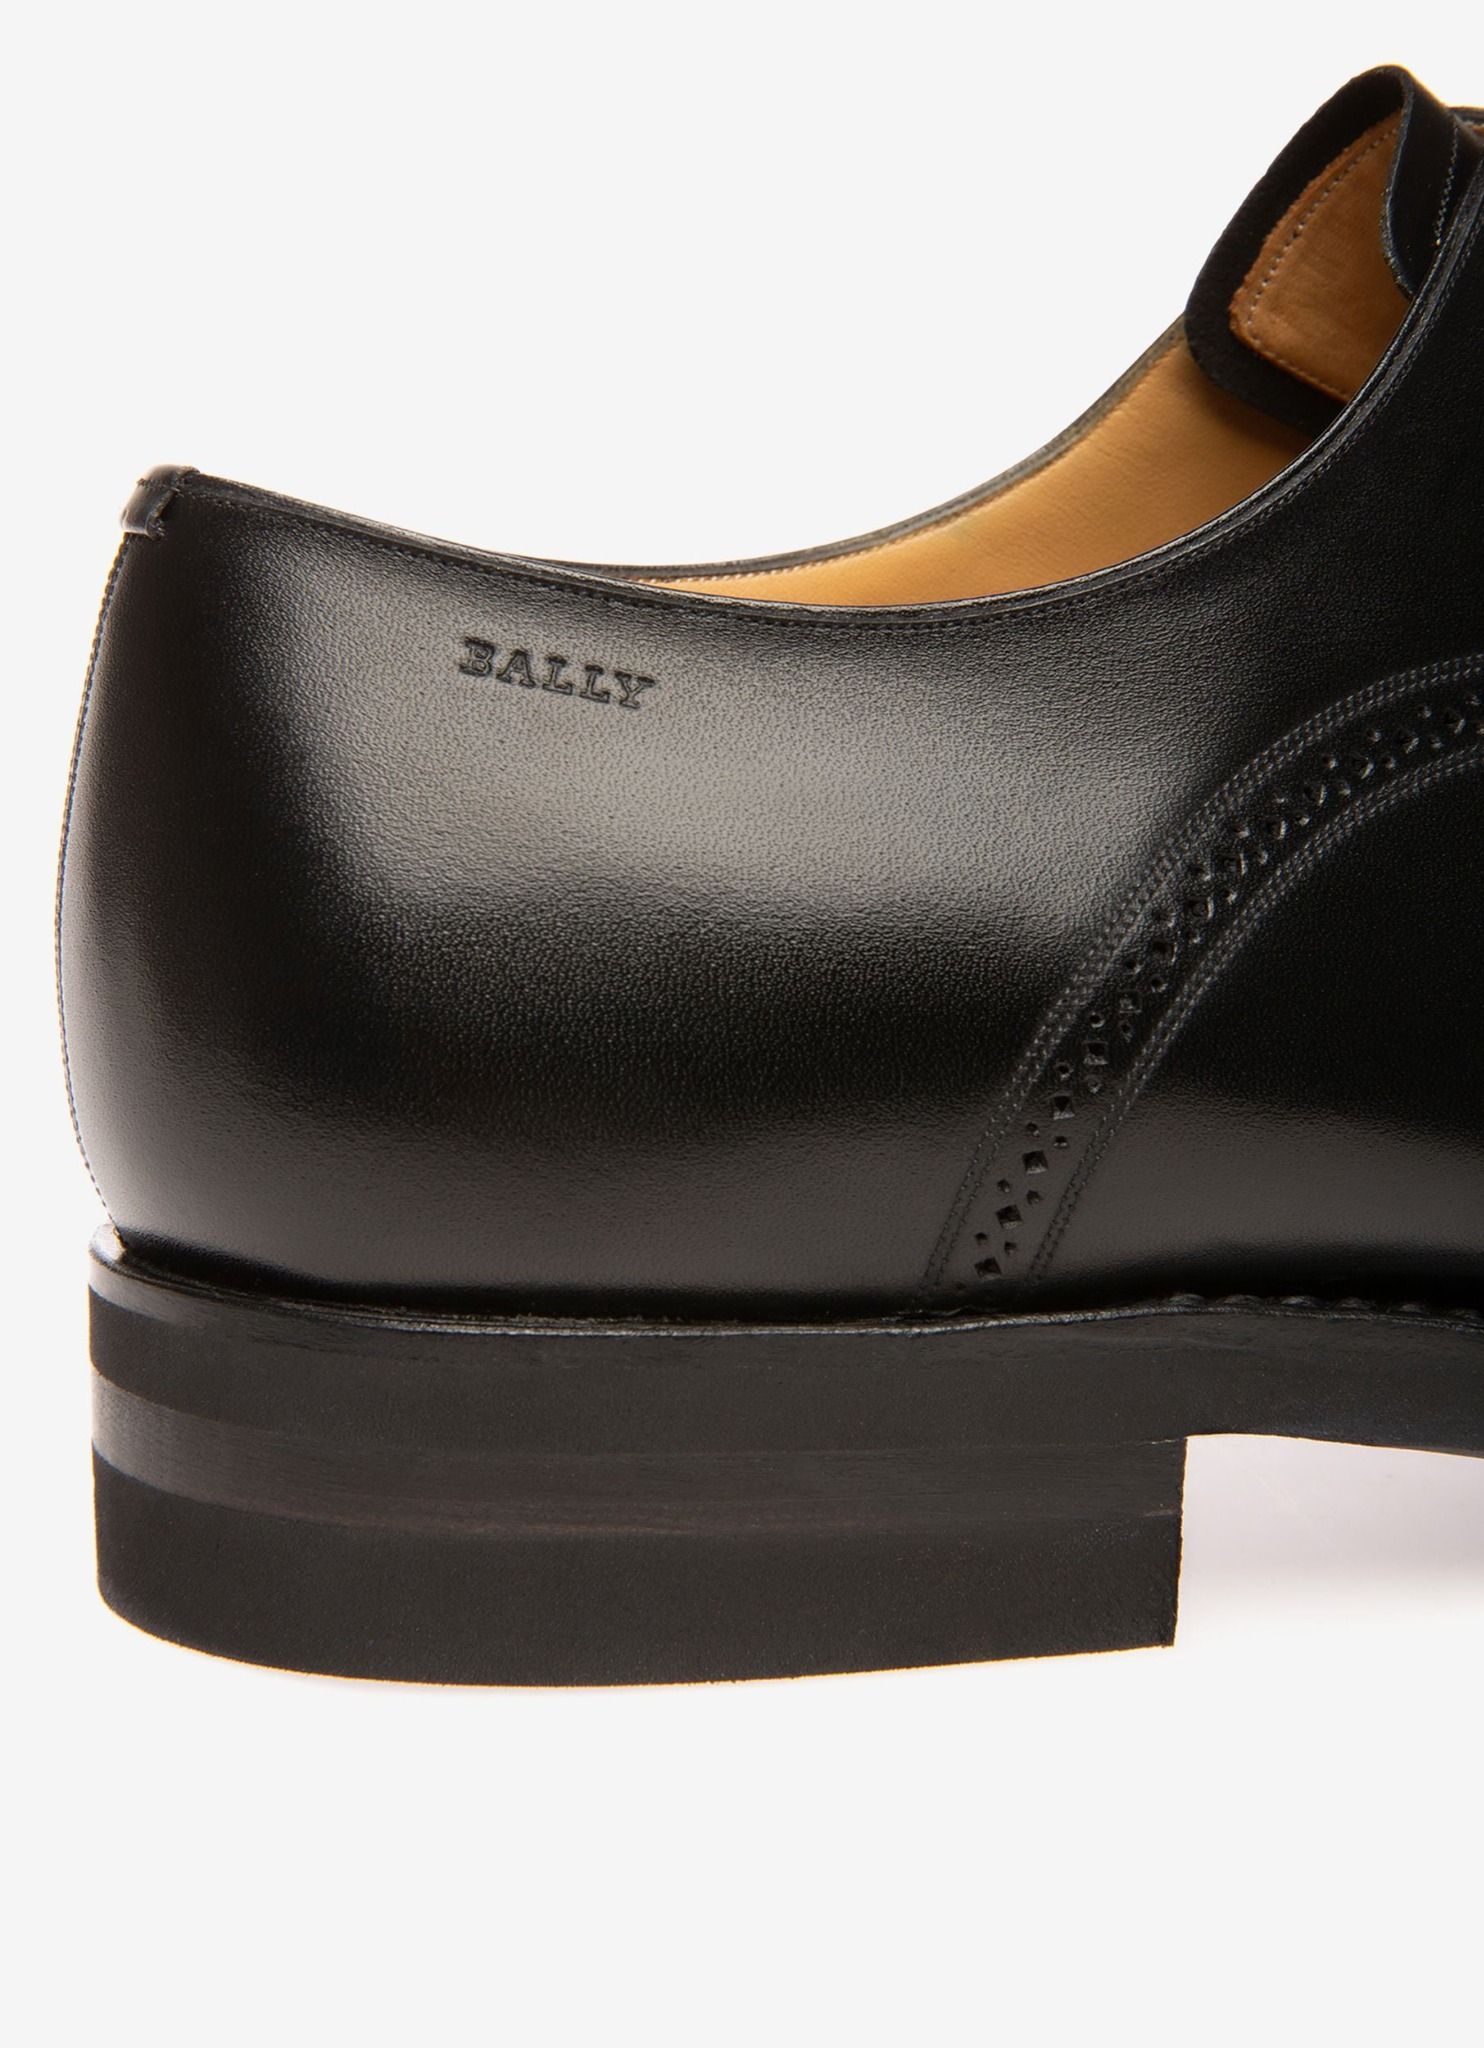  Giày Nam Bally Scribe Novo Oxford Shoes 'Black' 